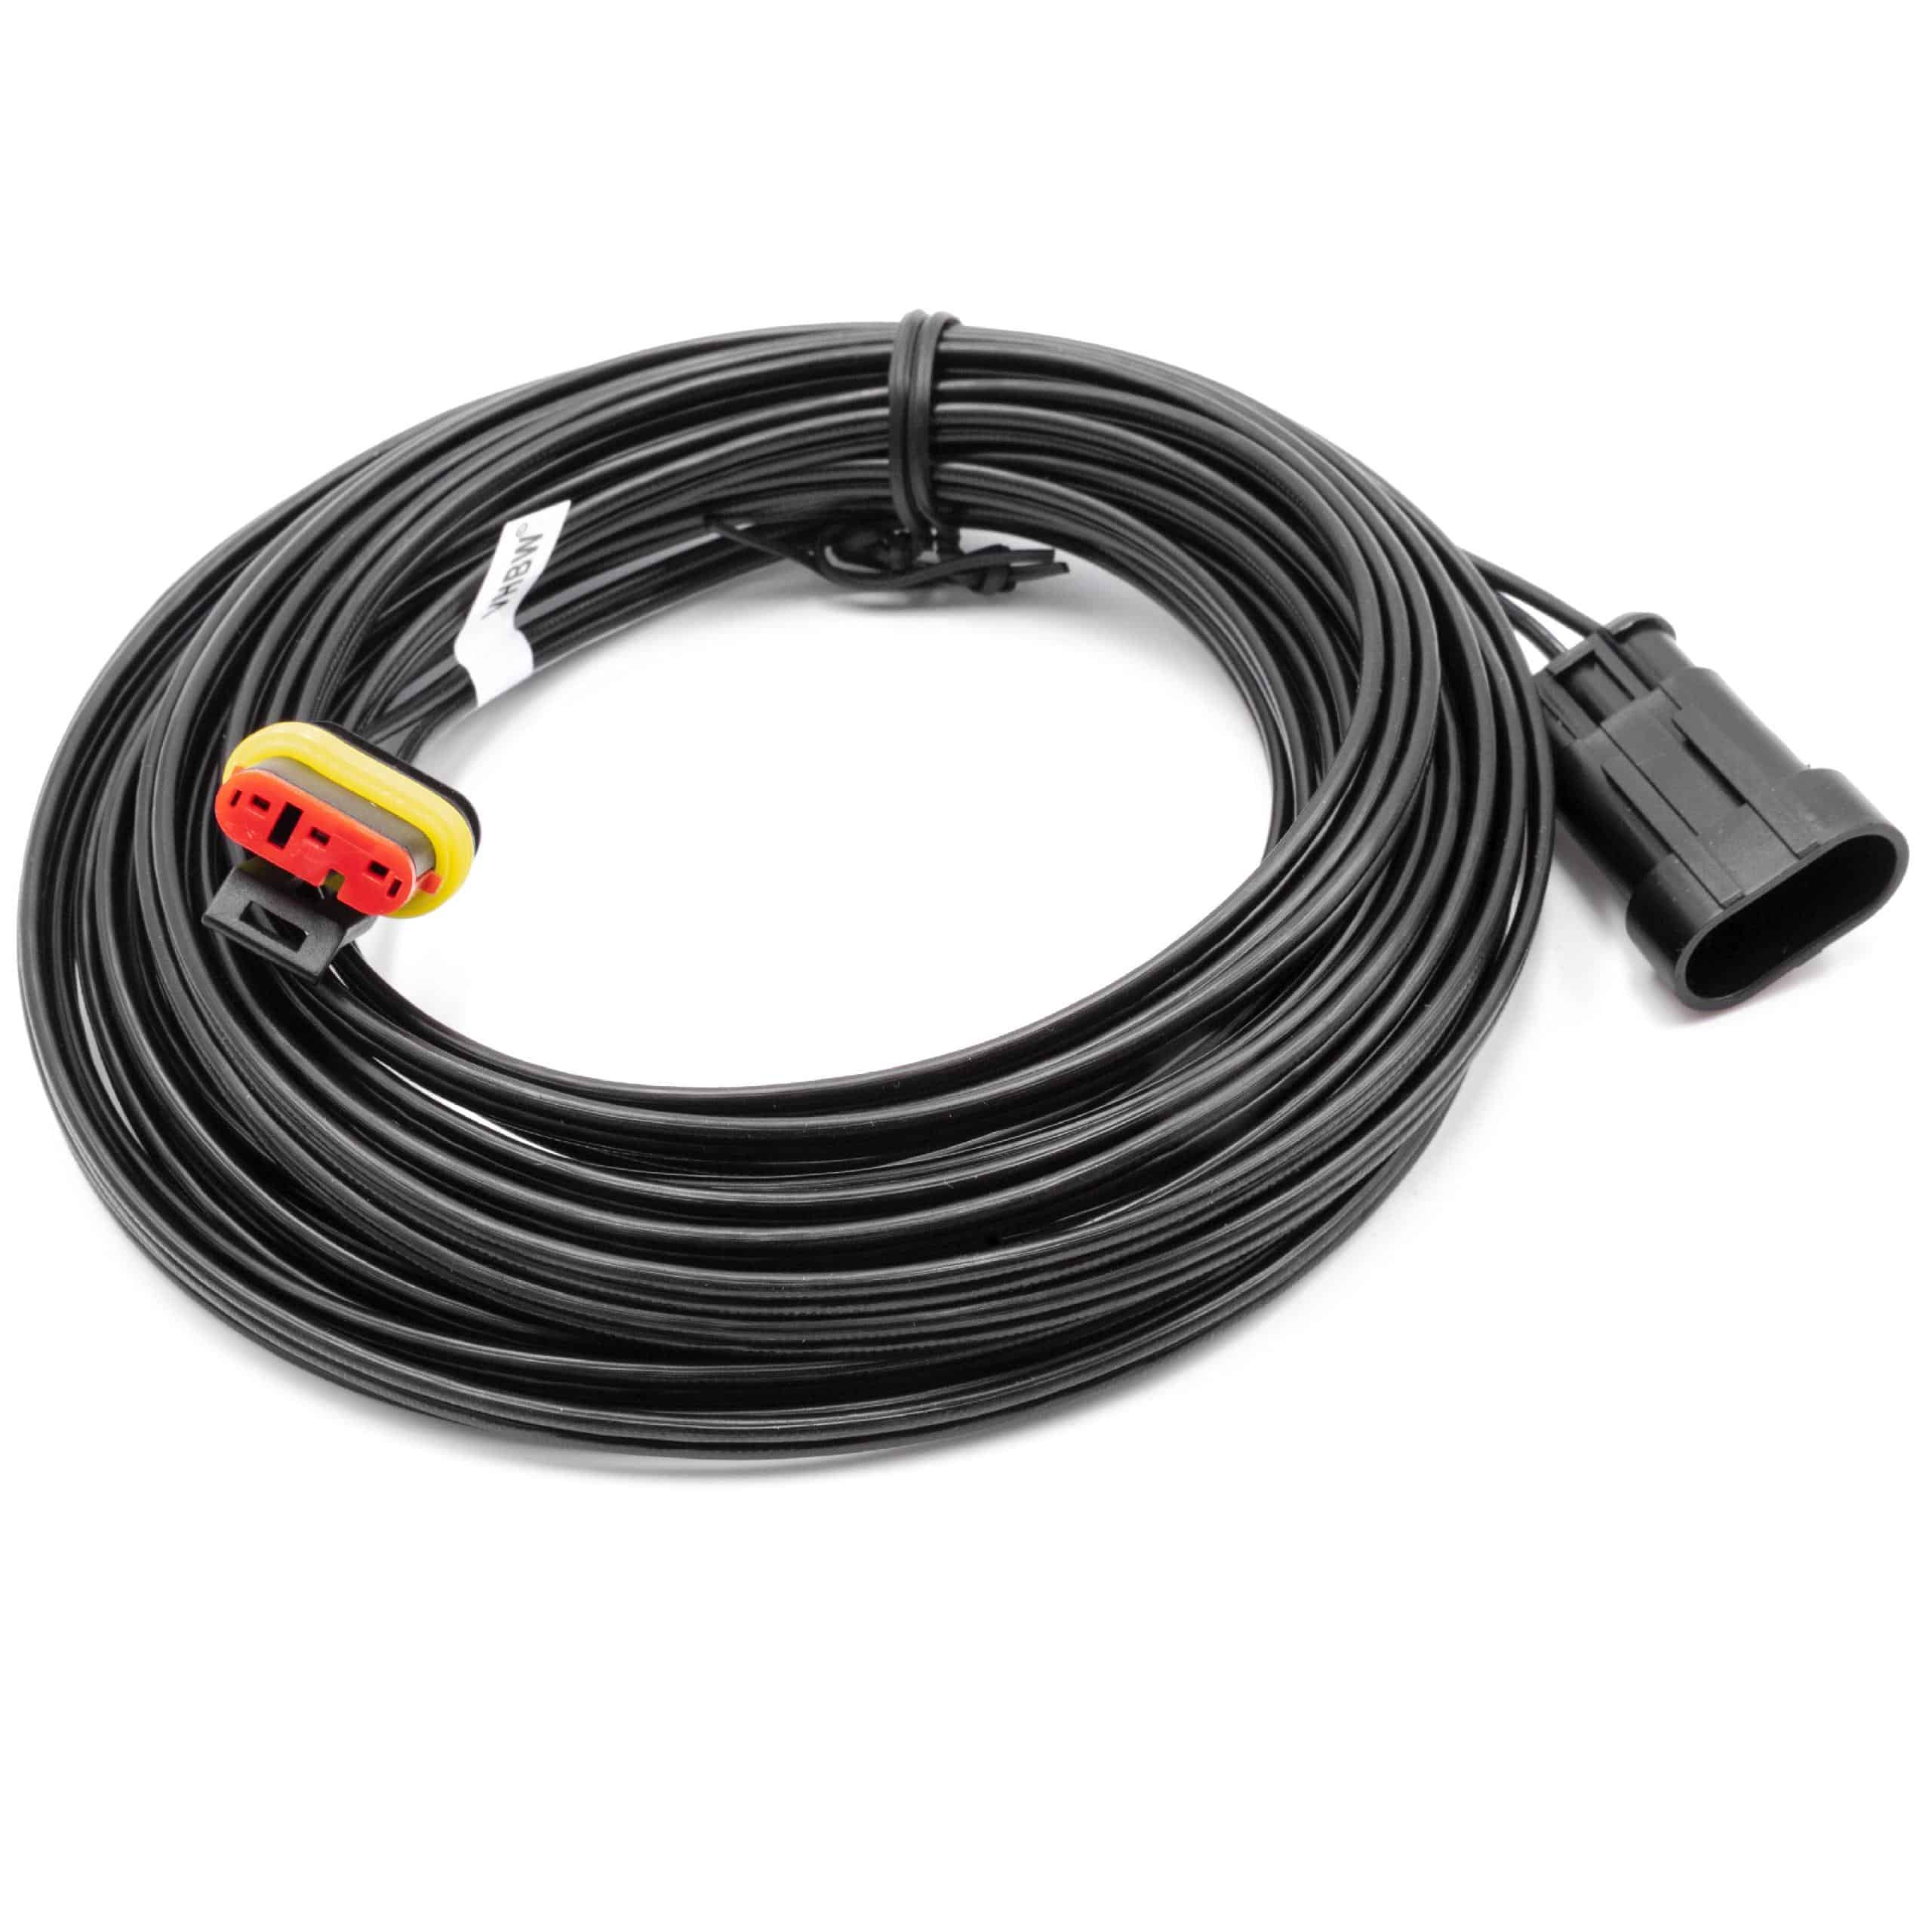 Cable de bajo voltaje reemplaza Gardena 00057-98.251.01 - cable trafo, 10 m